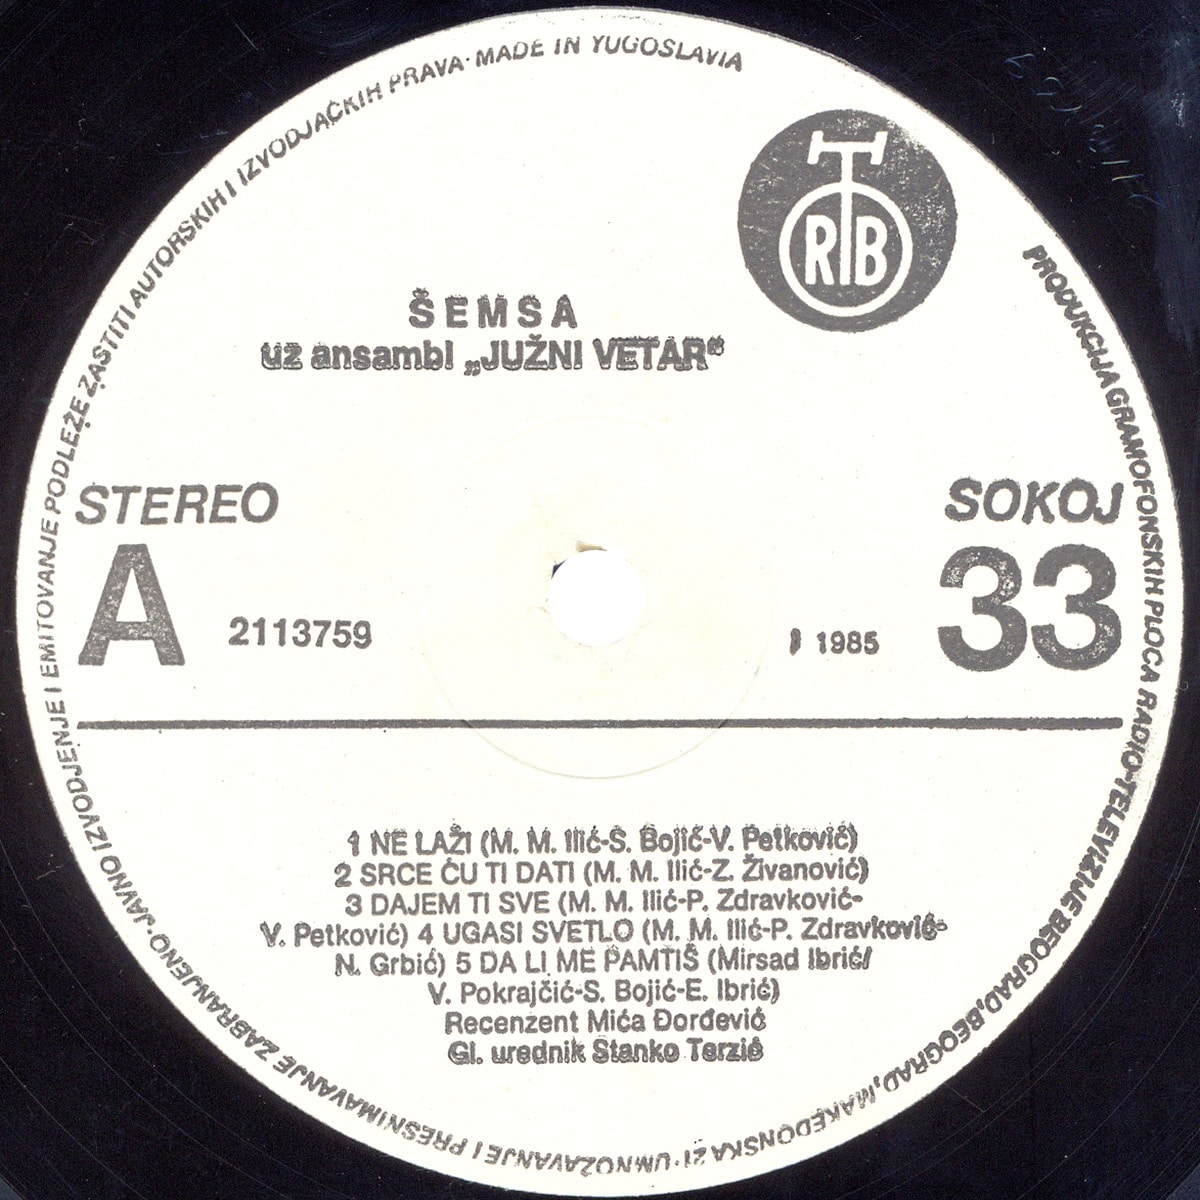 Semsa Suljakovic 1985 s A